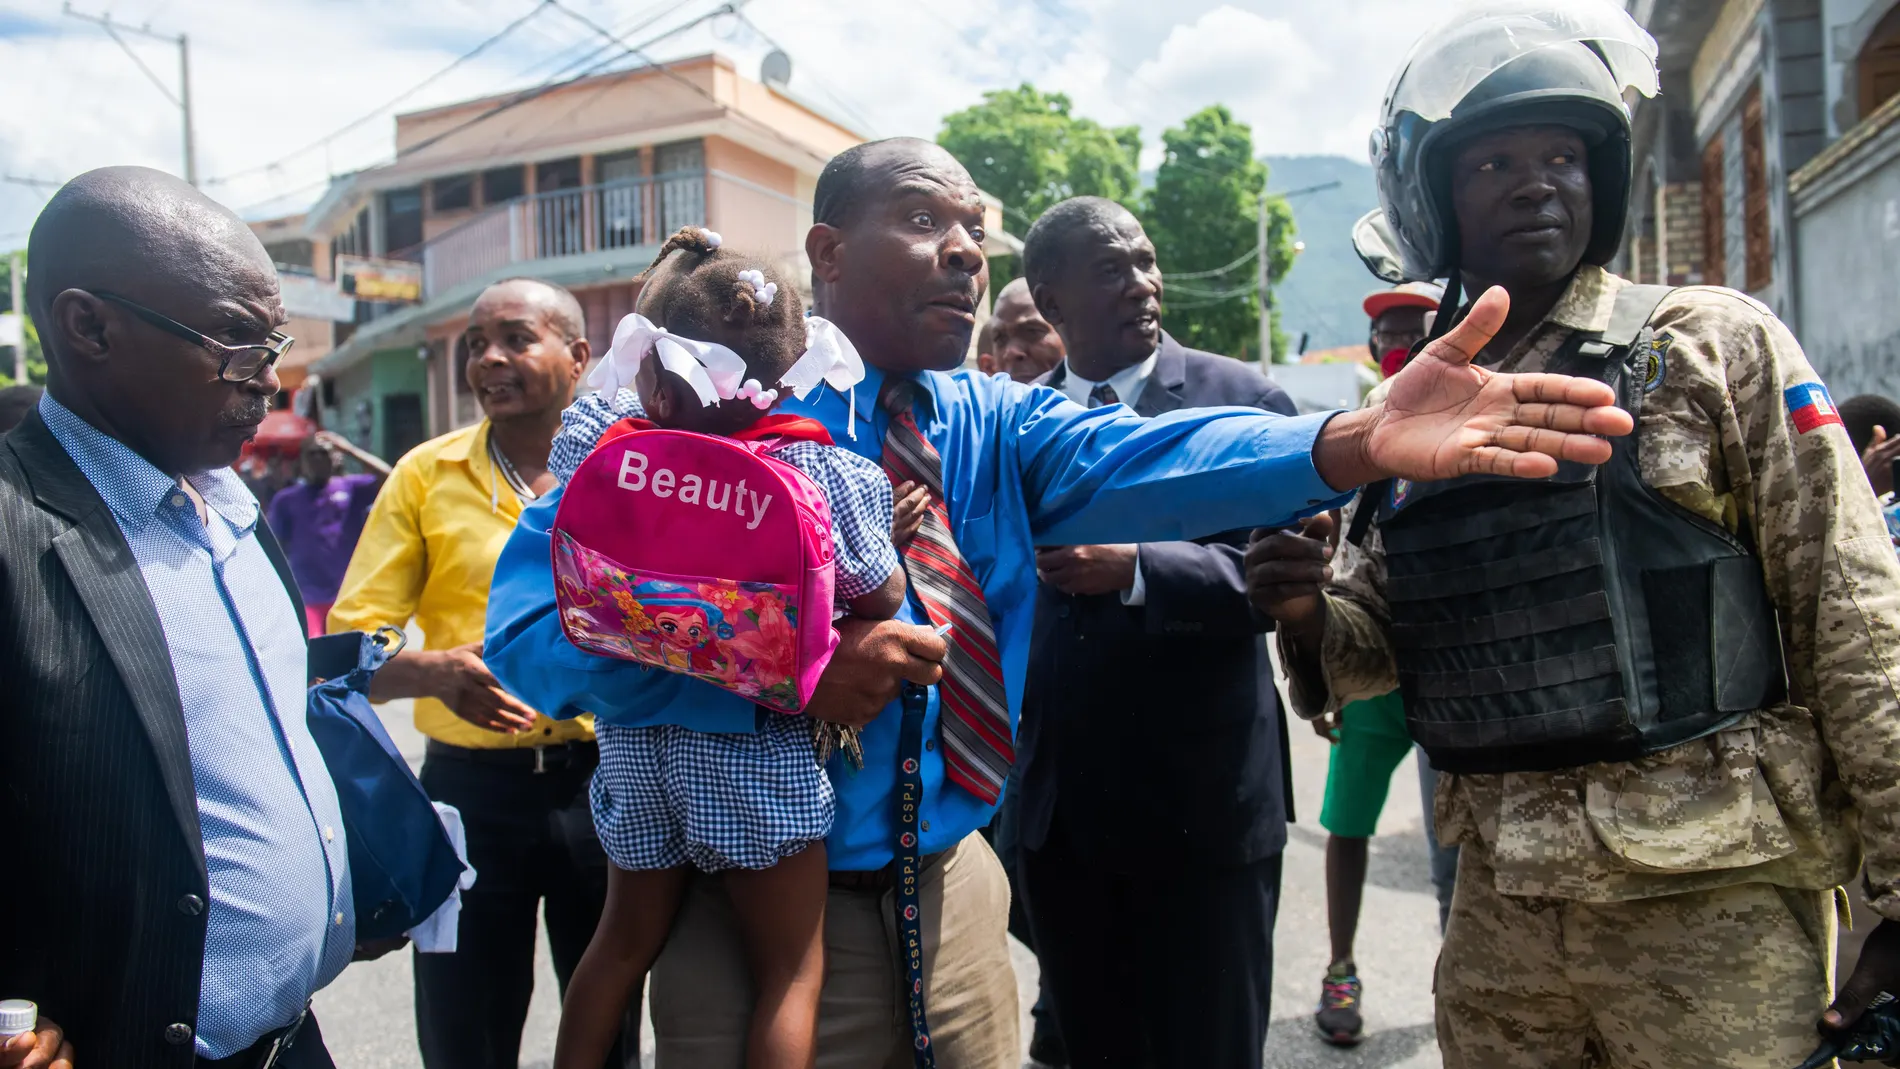 AME9448. PUERTO PRÍNCIPE (HAITÍ), 05/10/2020.- Un hombre habla con unos policías durante una protesta, este lunes, por la muerte del estudiante Grégory Saint-Hilaire, fallecido supuestamente por tiros de un policía de la guardia presidencial el pasado 2 de octubre en Puerto Príncipe (Haití). Al menos un manifestante murió en las protestas de este lunes, que coinciden con una advertencia hecha este lunes por el Consejo de Seguridad de la ONU por el riesgo de que estas tensiones desestabilicen Haití. EFE/ Jean Marc Herve Abelard